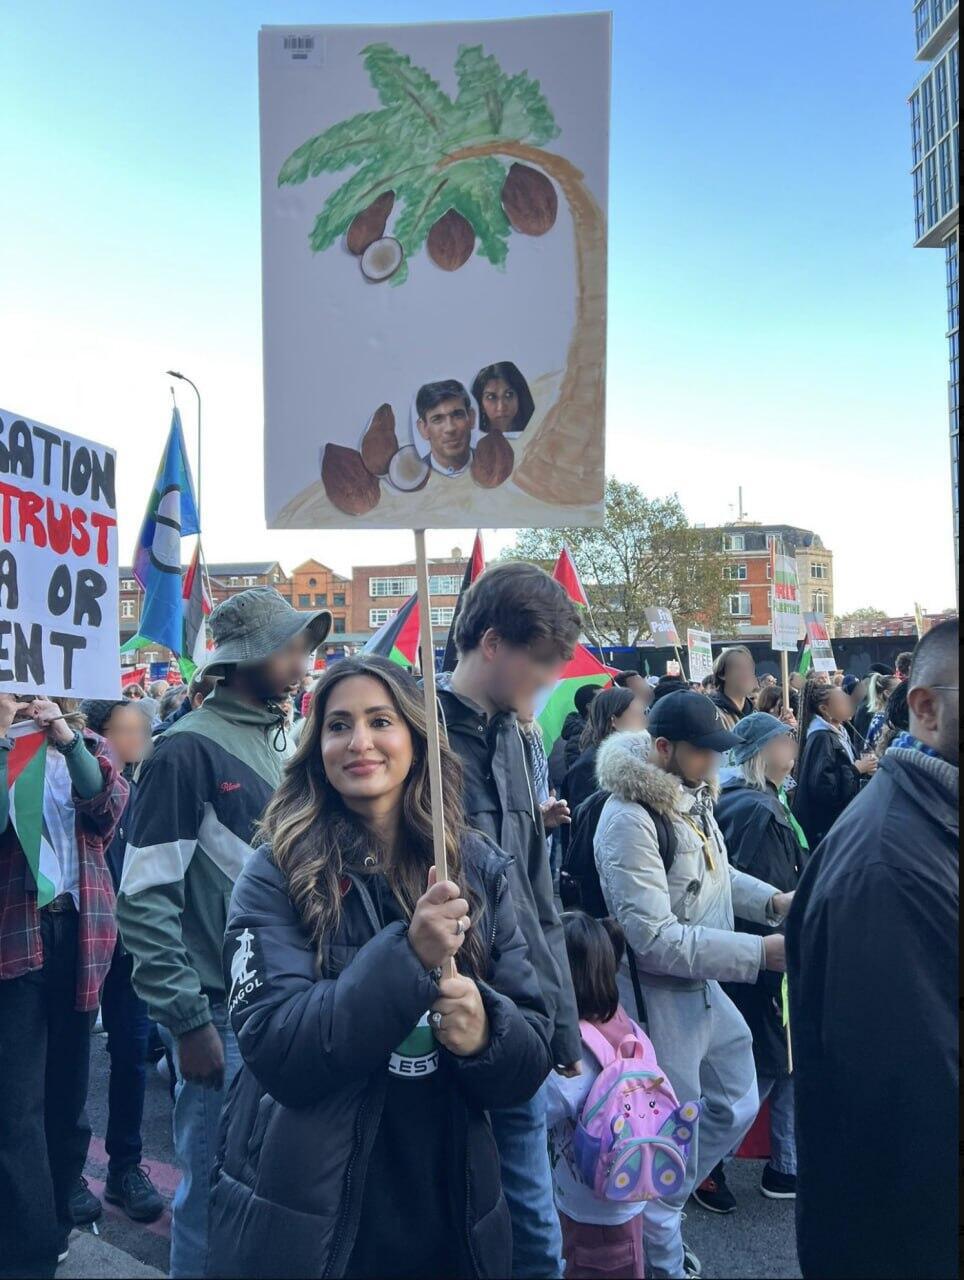 בריטניה הפגנה פרו פלסטינית שלט גזעני נגד רישי סונאק ו סואלה ברוורמן